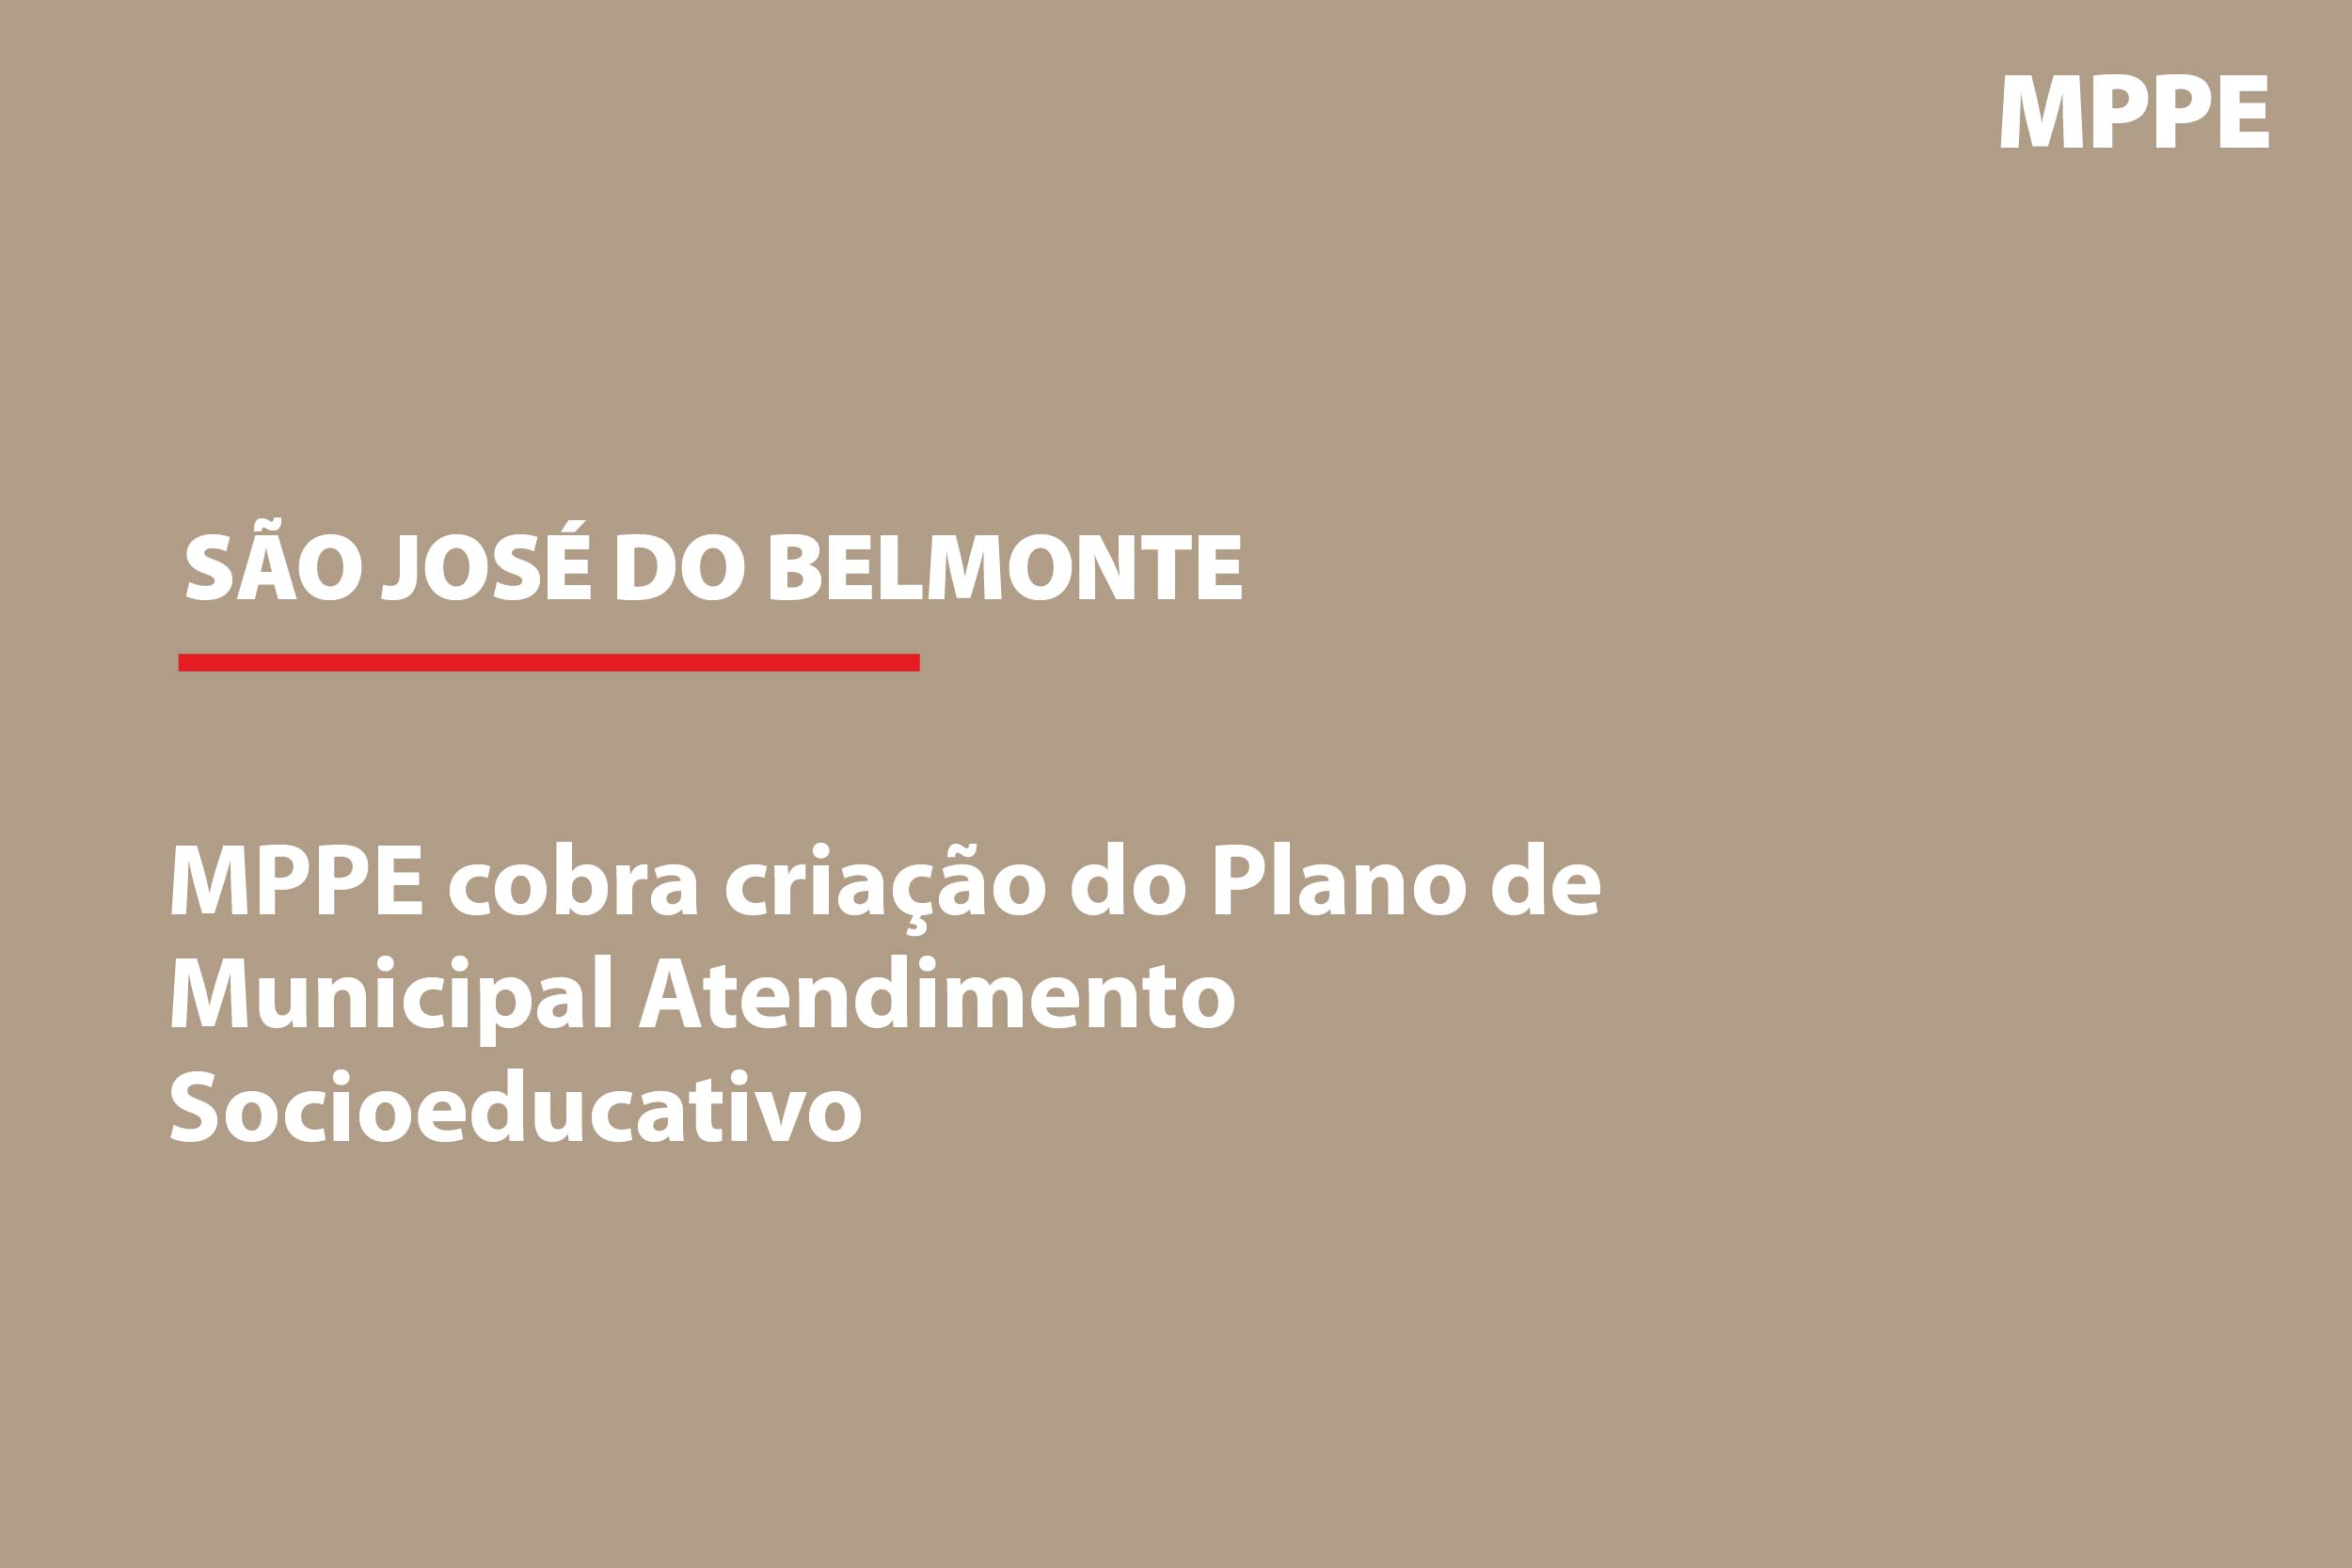 São José do Belmonte: MPPE cobra criação do Plano Municipal de Atendimento Socioeducativo